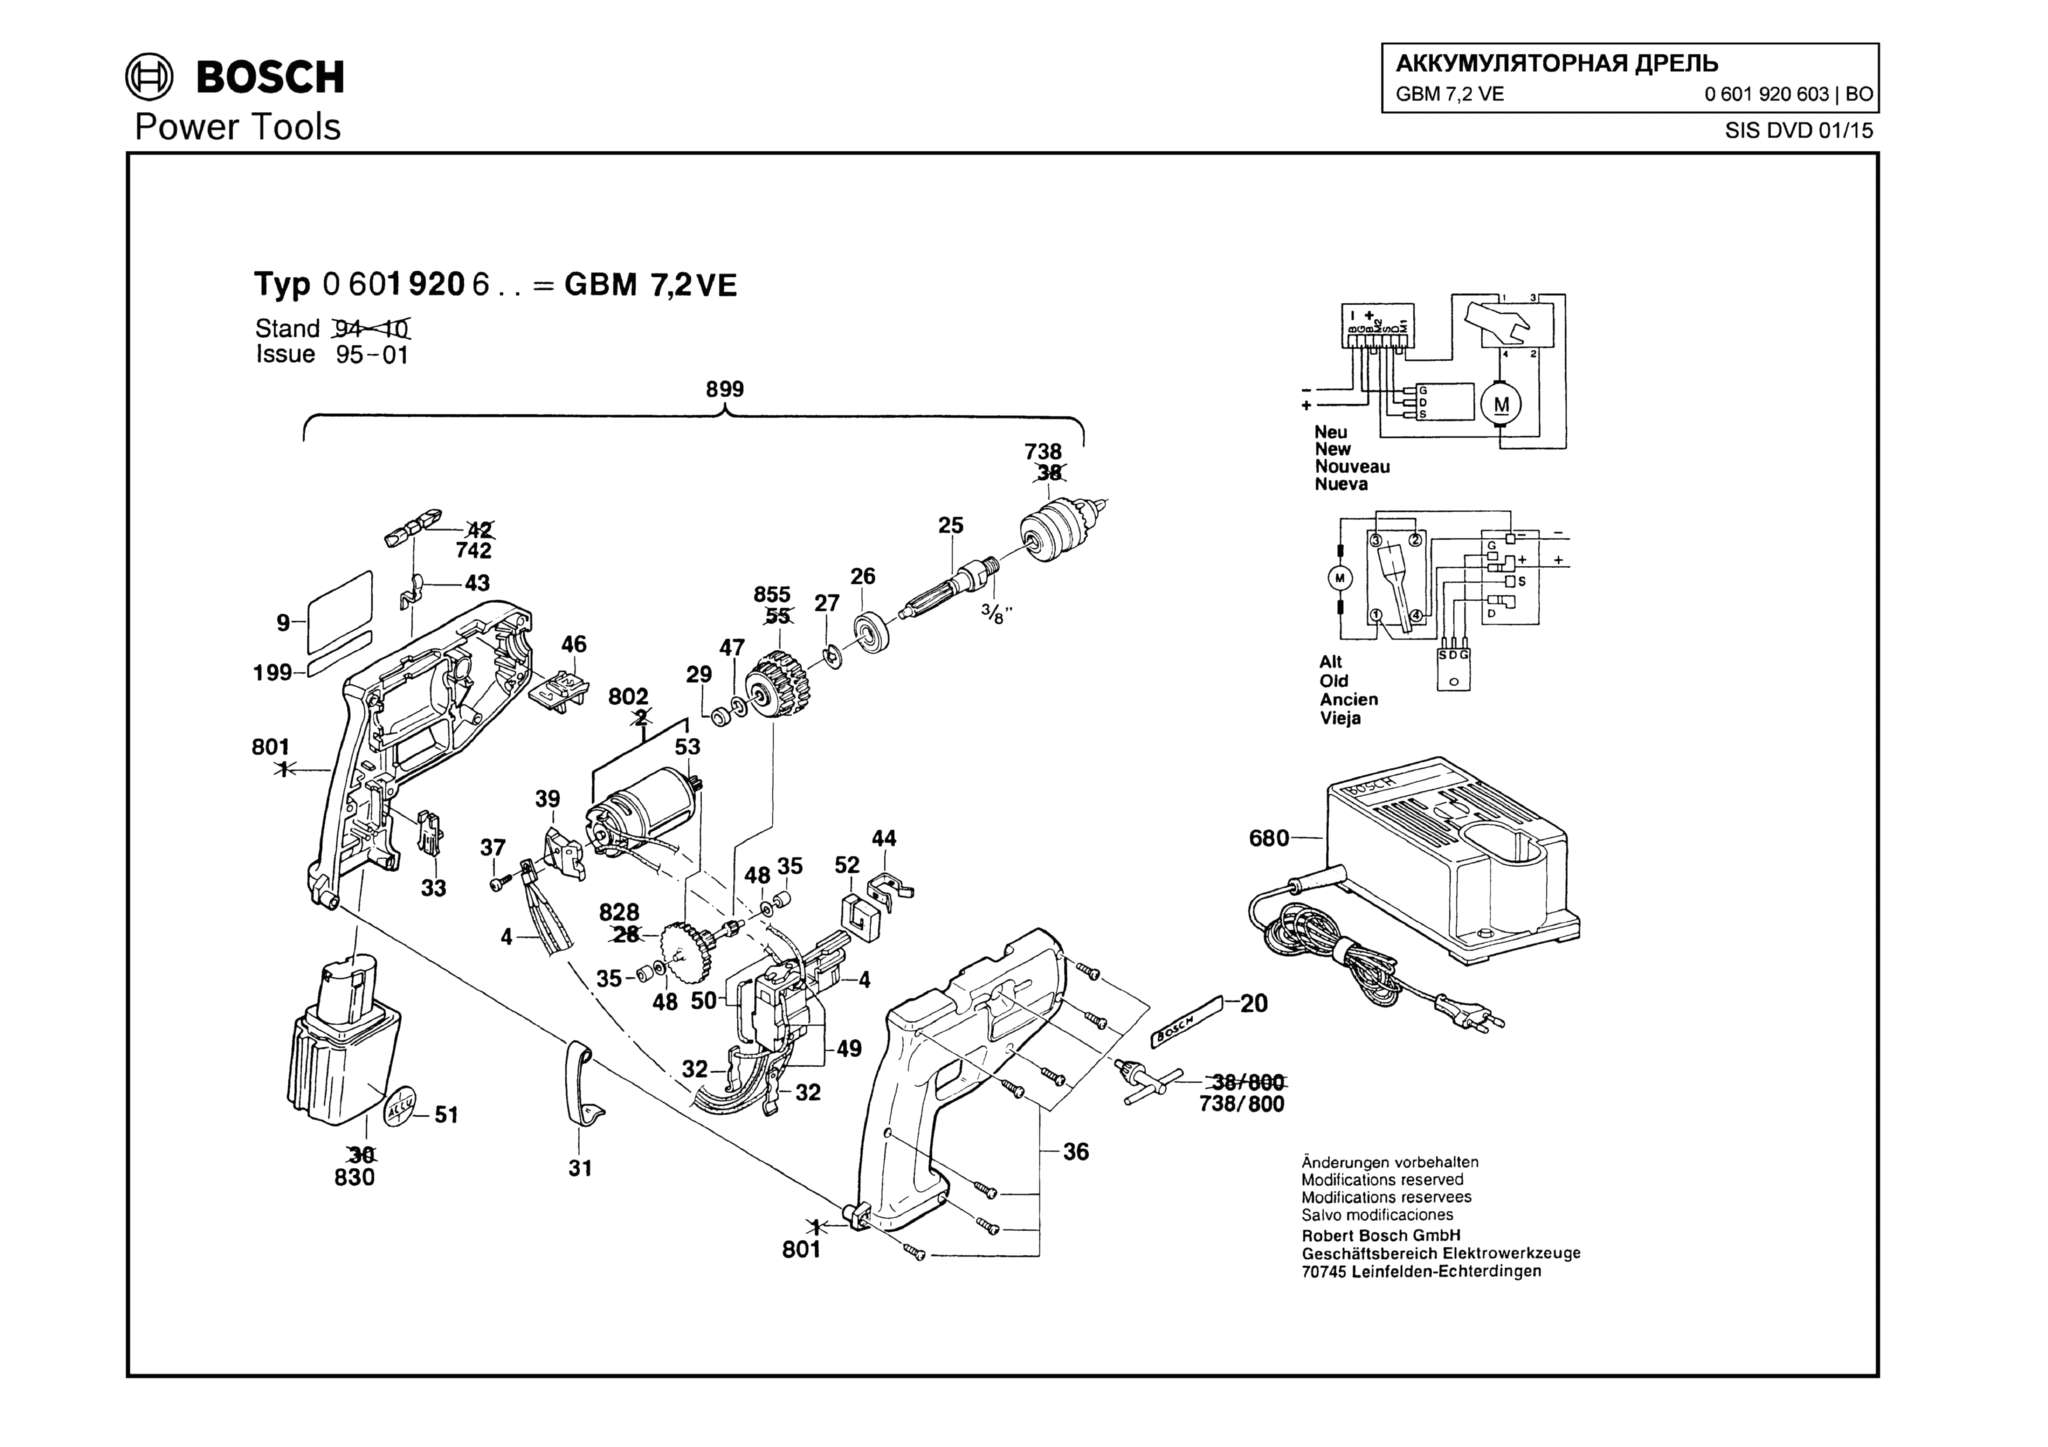 Запчасти, схема и деталировка Bosch GBM 7,2 VE (ТИП 0601920603)